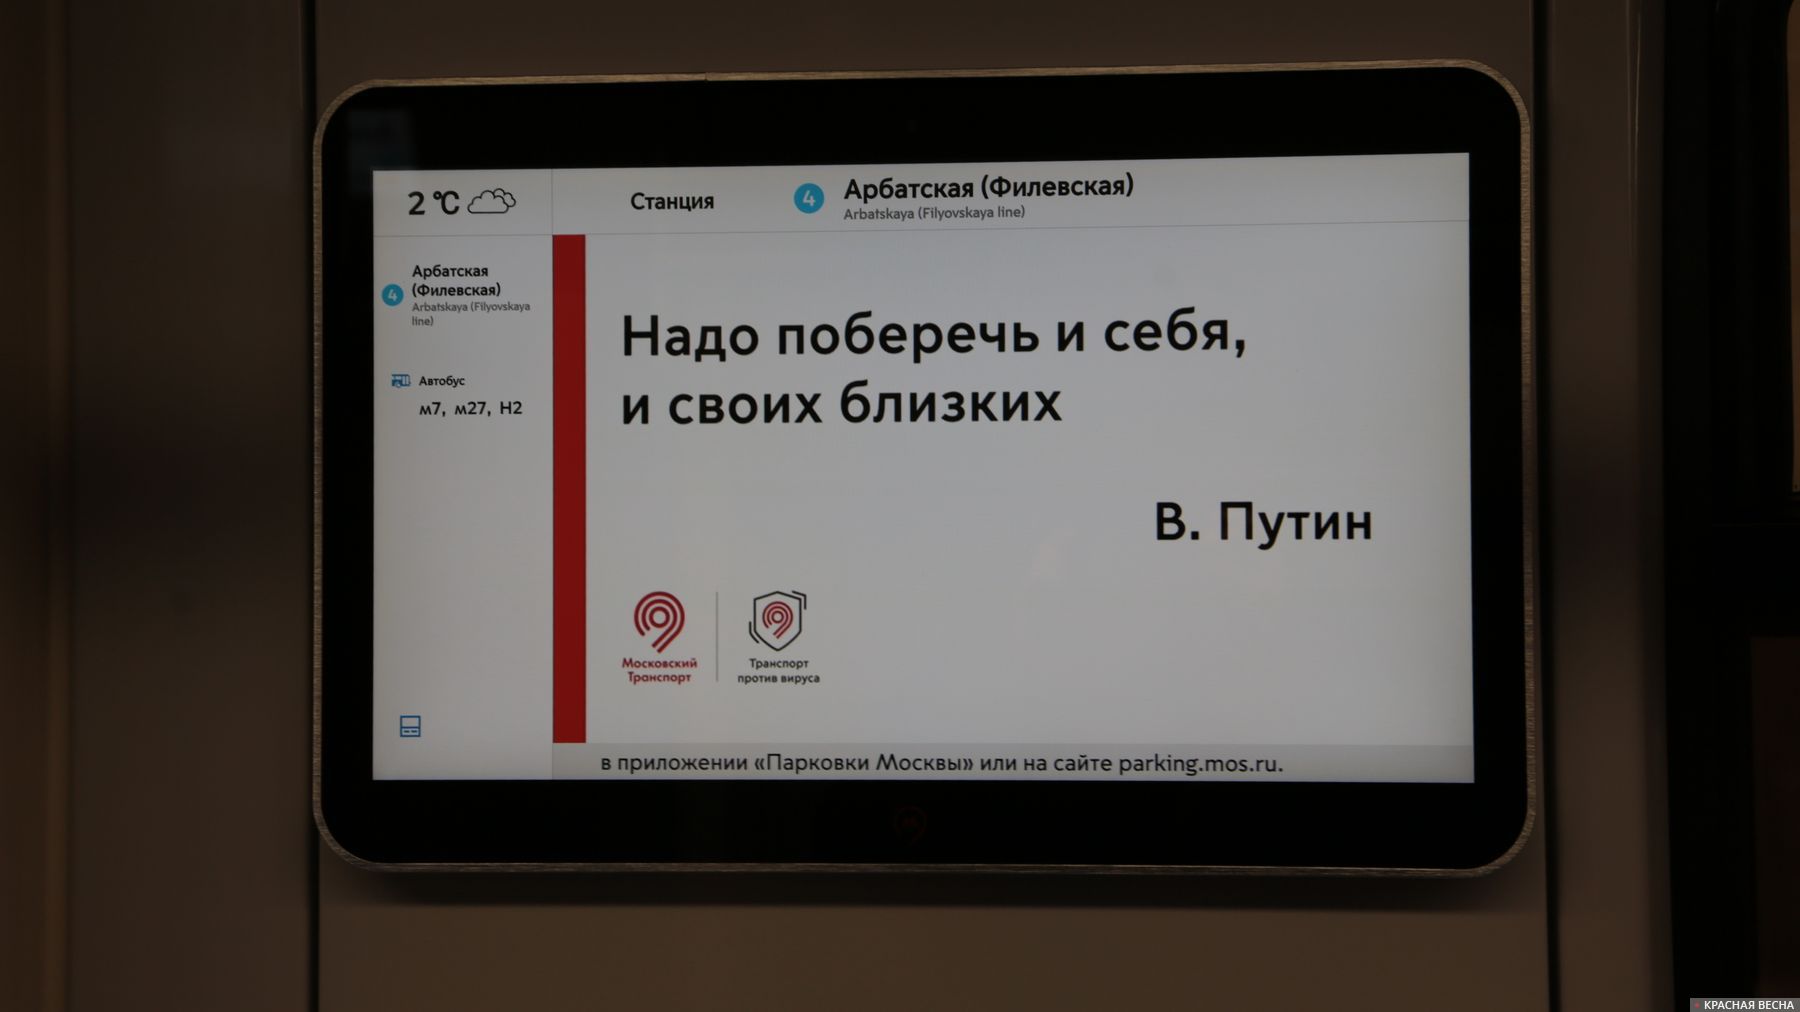 Актуальная цитата Владимира Путина в вагоне метро